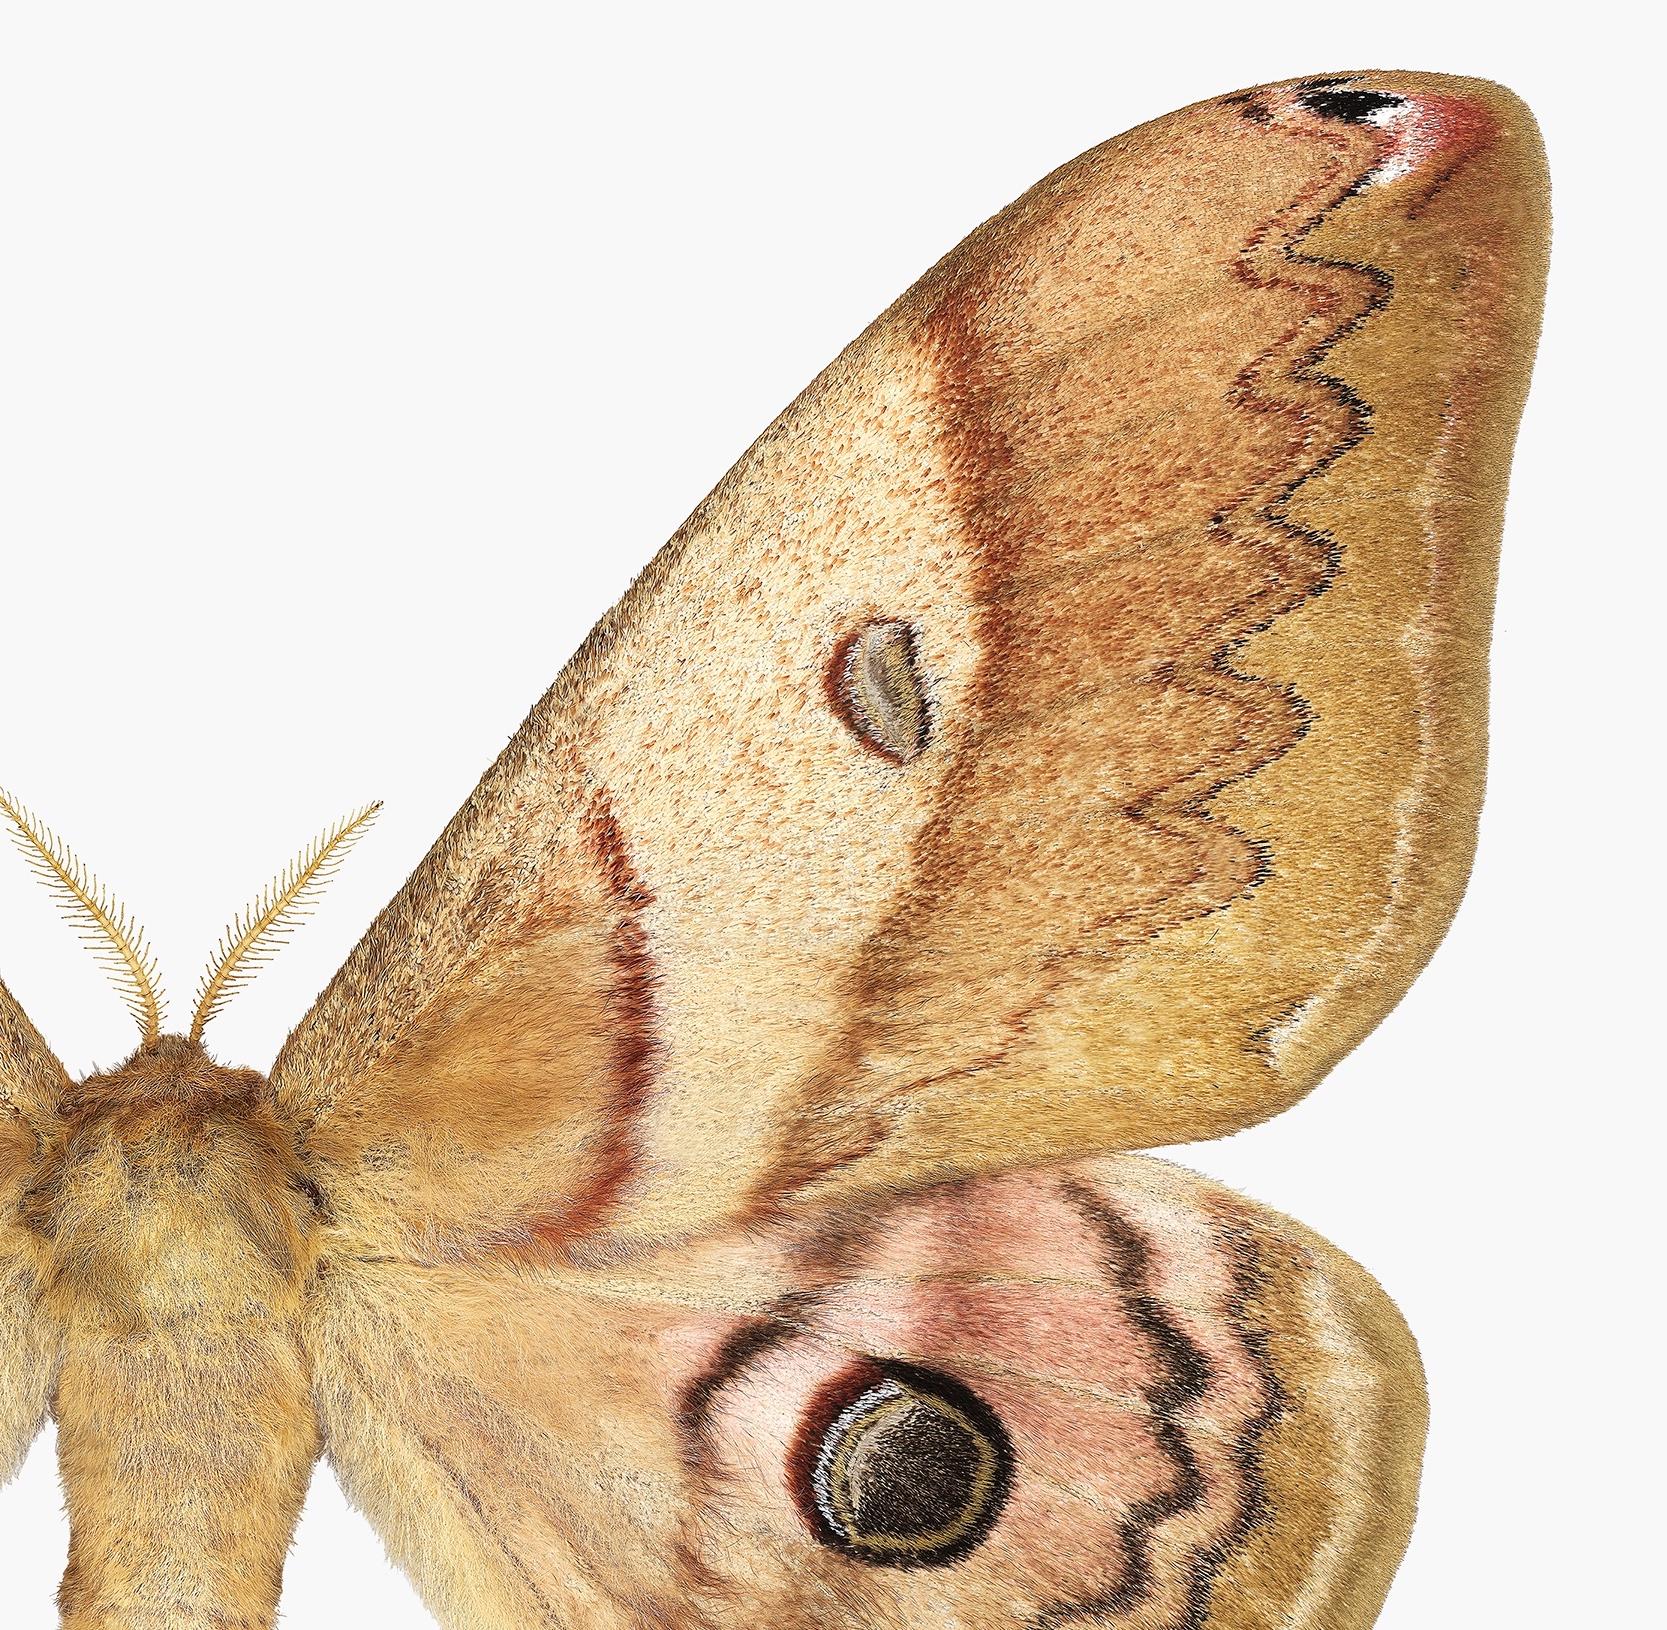 Dans cette impression pigmentaire d'archives hyper-détaillée sur papier aquarelle, un papillon de nuit aux couleurs ocre jaune et brun doré avec de légers détails bordeaux sur ses ailes se détache de façon spectaculaire sur un fond blanc uni.